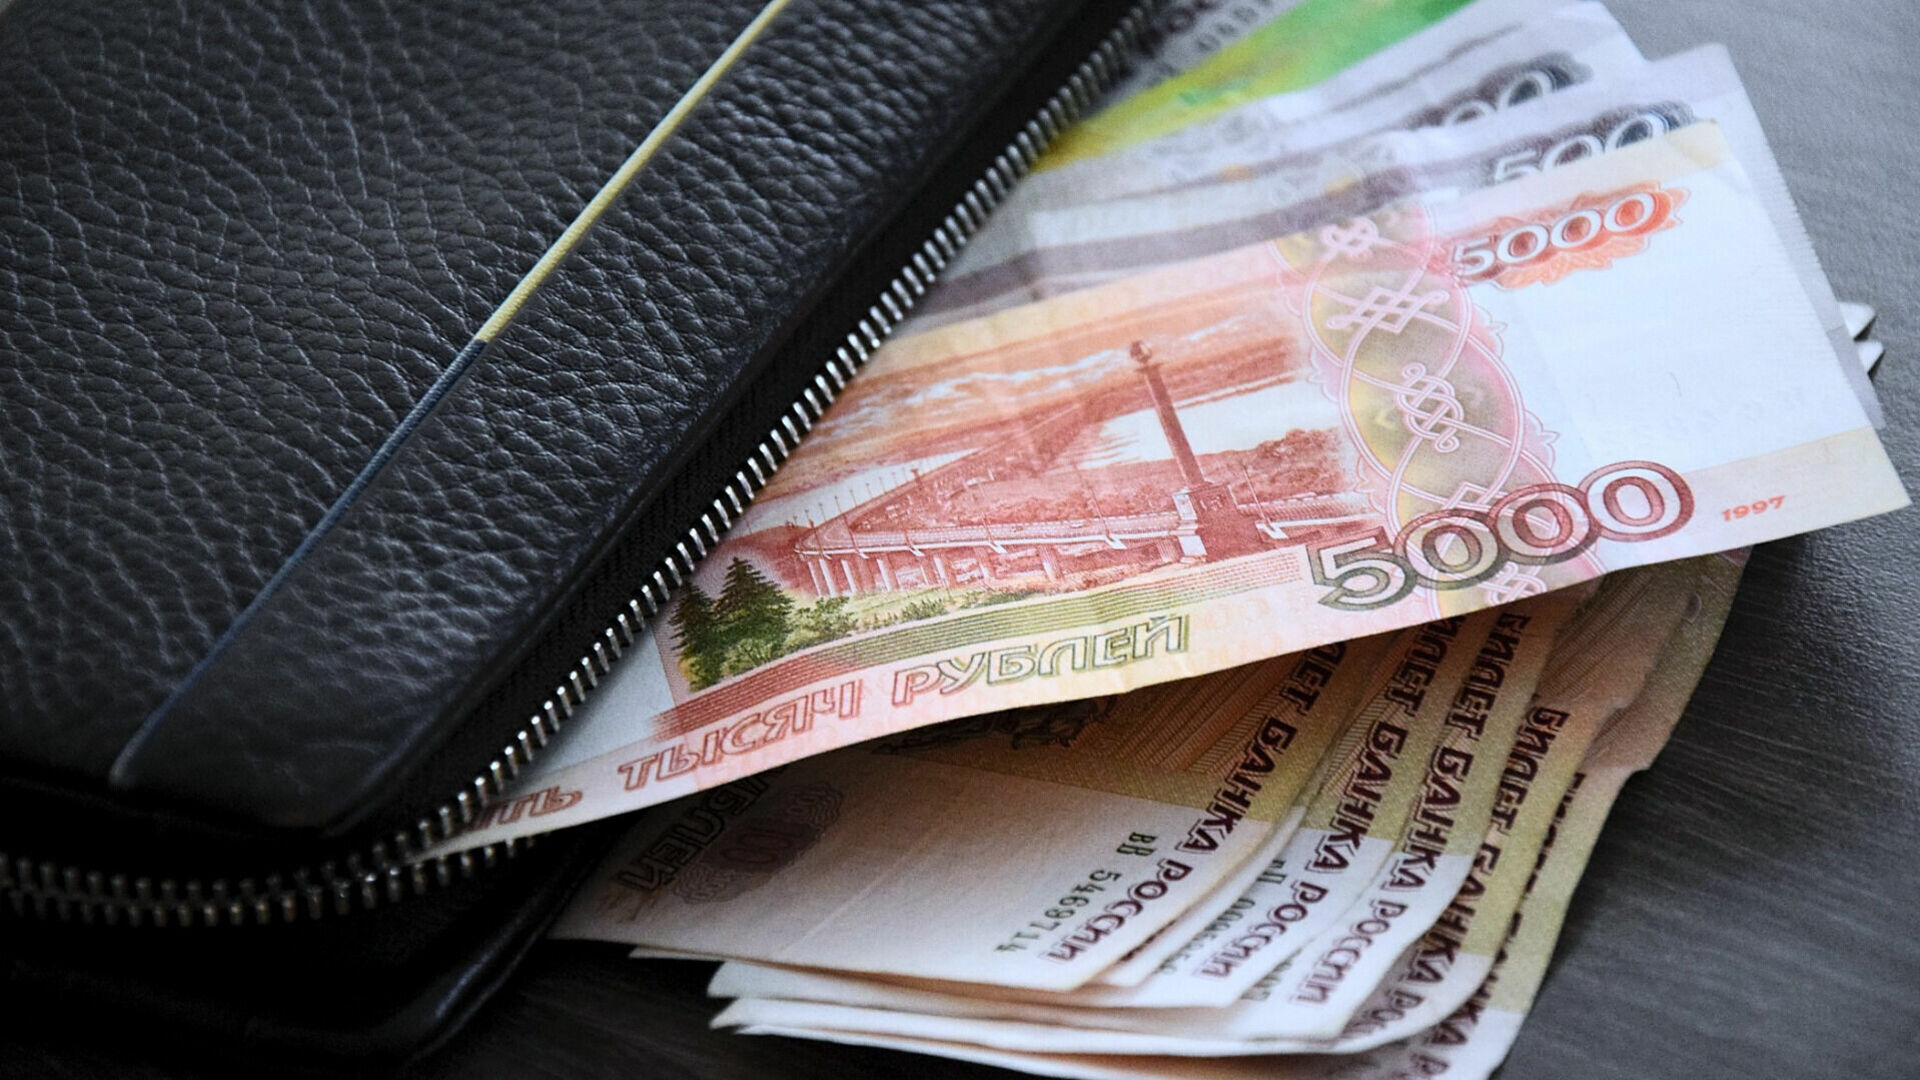 Фальшивые купюры 5 000 рублей обнаружили в Волгограде